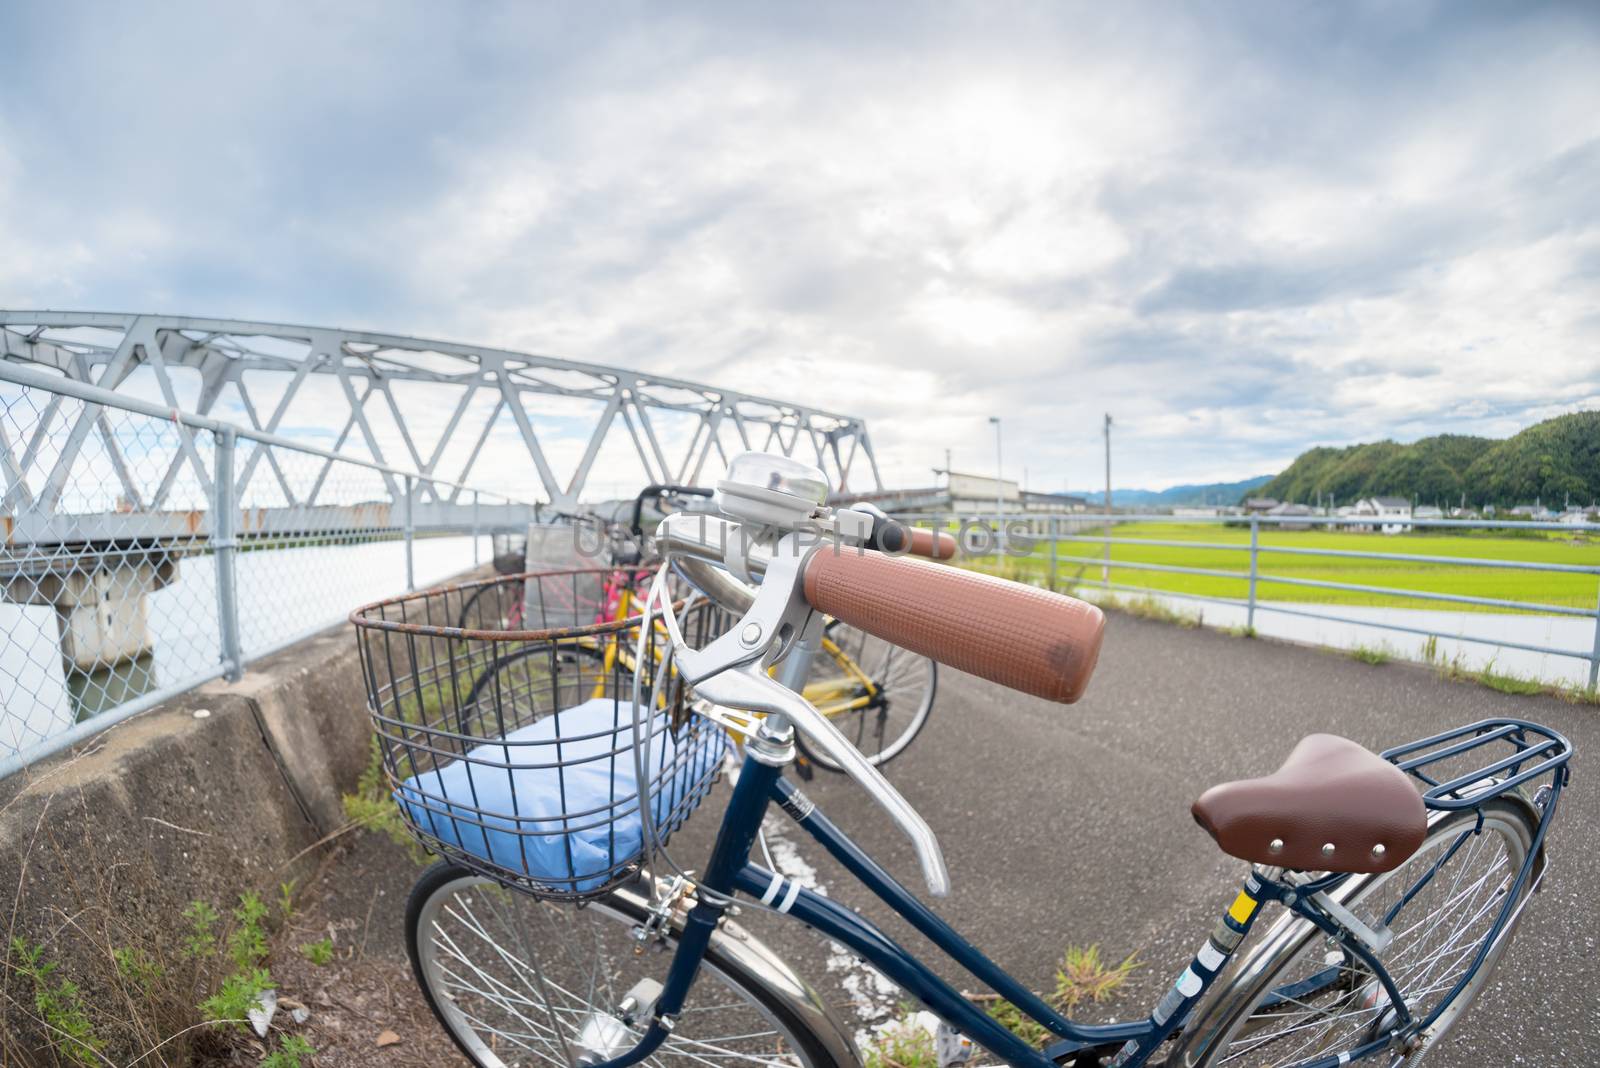 Fisheye Bicycle and Bridge by justtscott